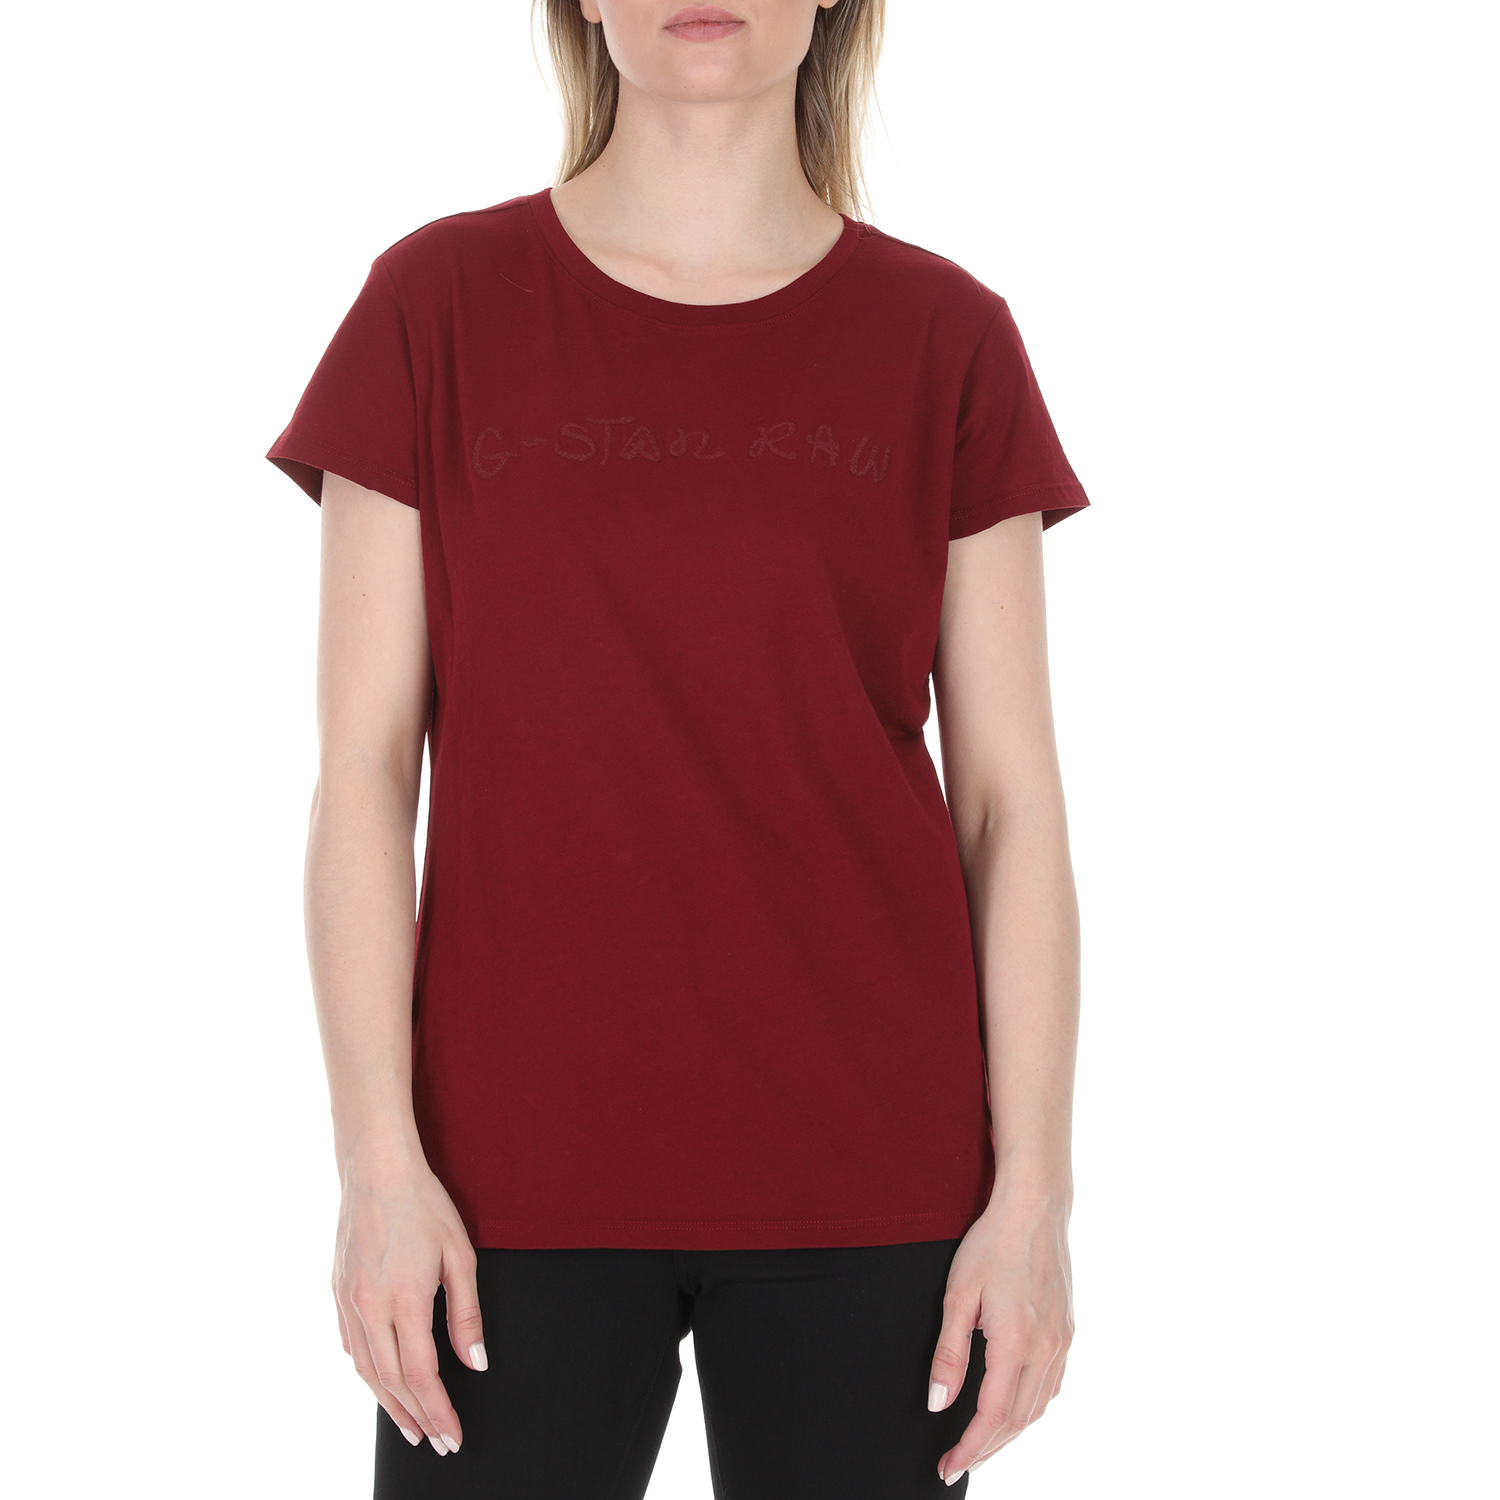 Γυναικεία/Ρούχα/Μπλούζες/Κοντομάνικες G-STAR RAW - Γυναικείο t-shirt G-STAR RAW κόκκινο